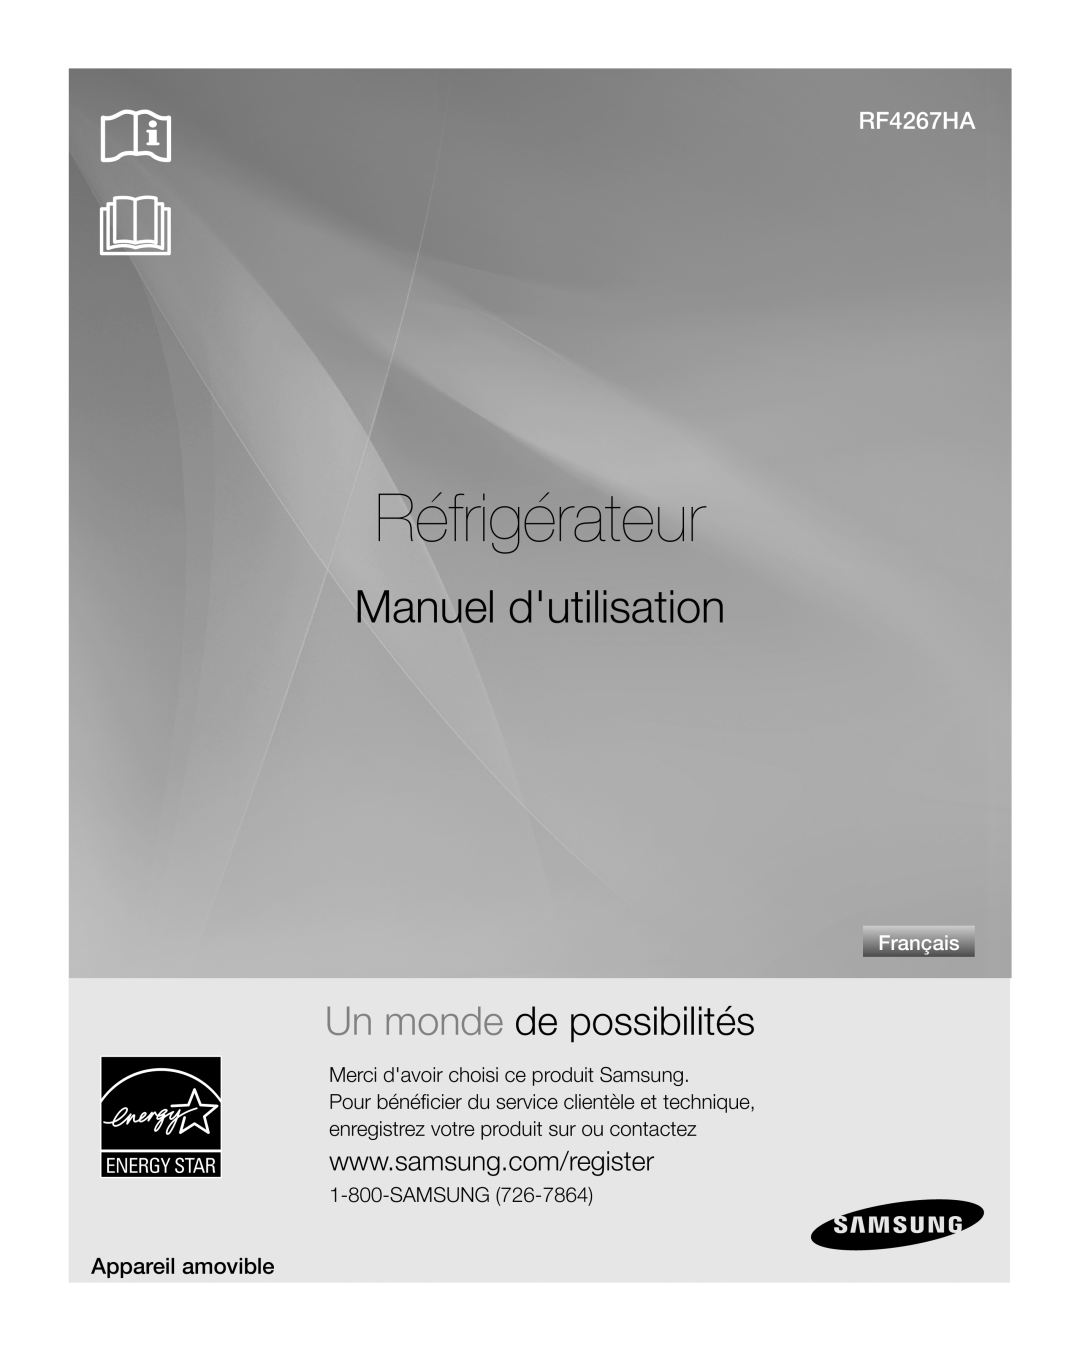 Samsung RF4267HA Réfrigérateur, Manuel dutilisation, Un monde de possibilités, Appareil amovible, Français, Samsung 